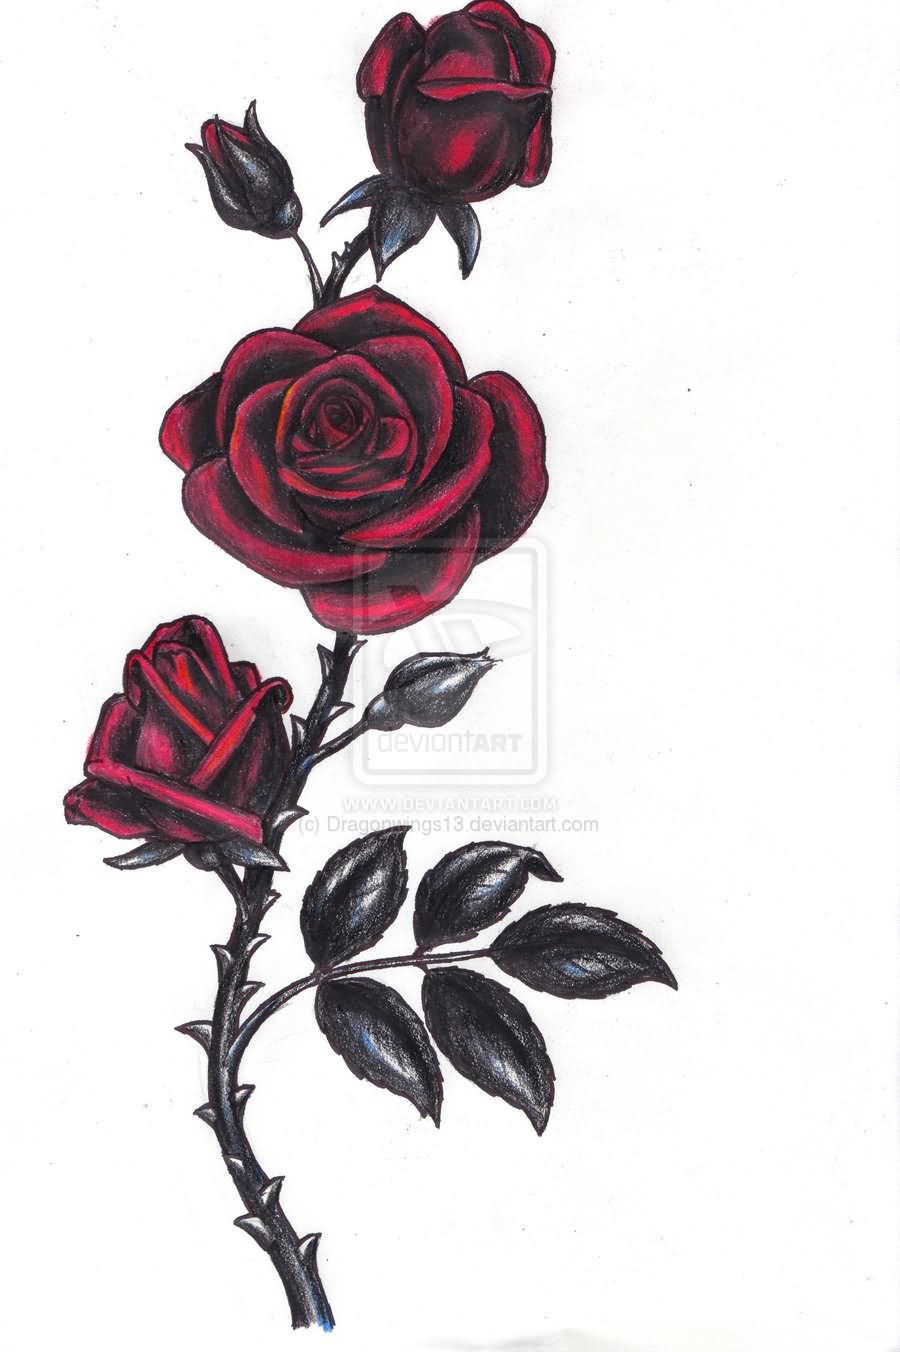 Gothic Roses Tattoo Design By Veronique